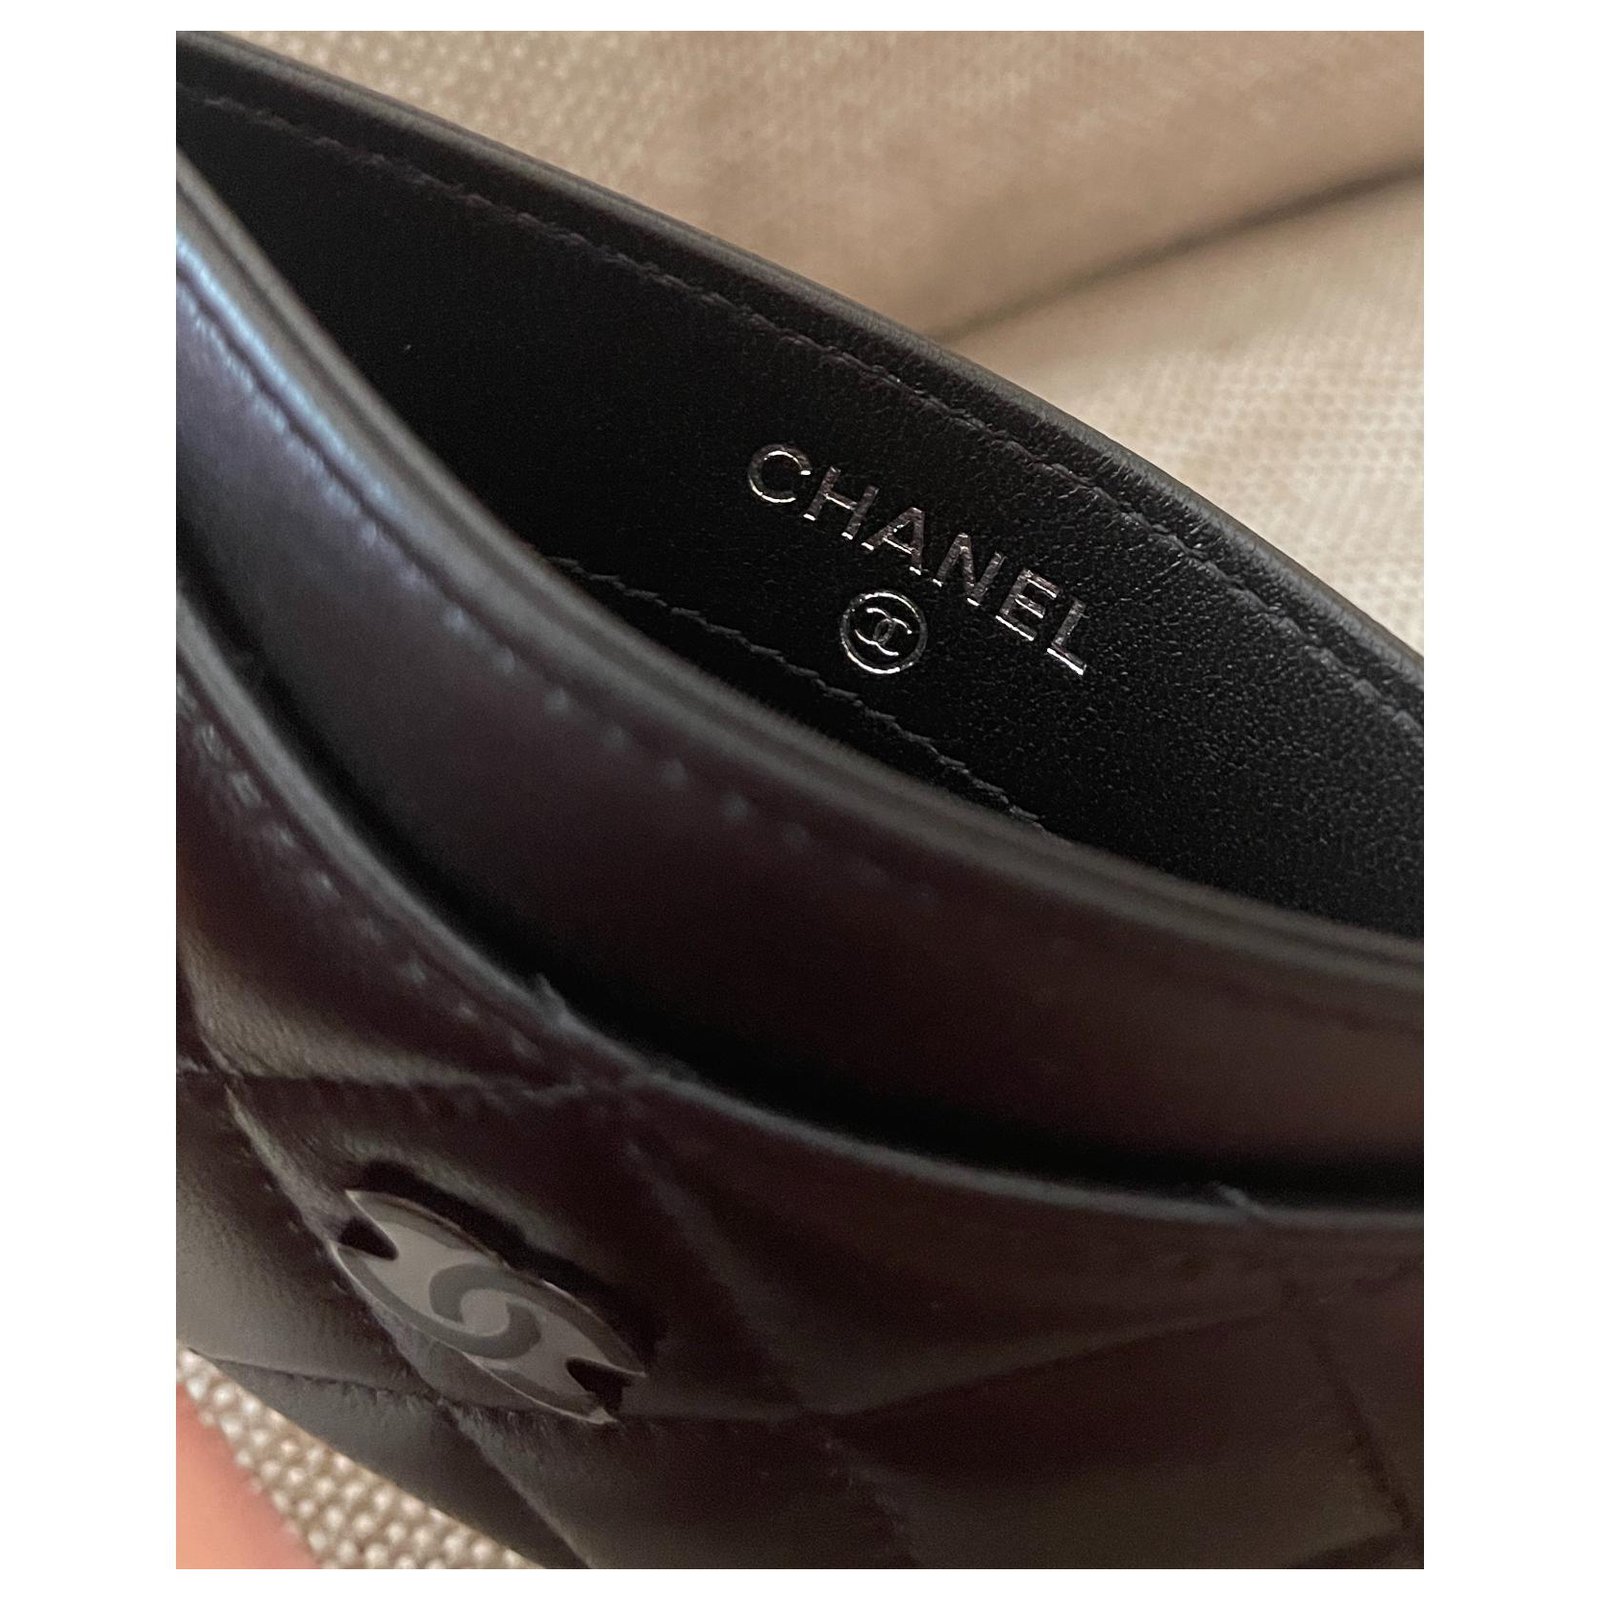 Chanel 2020 card holder - Gem